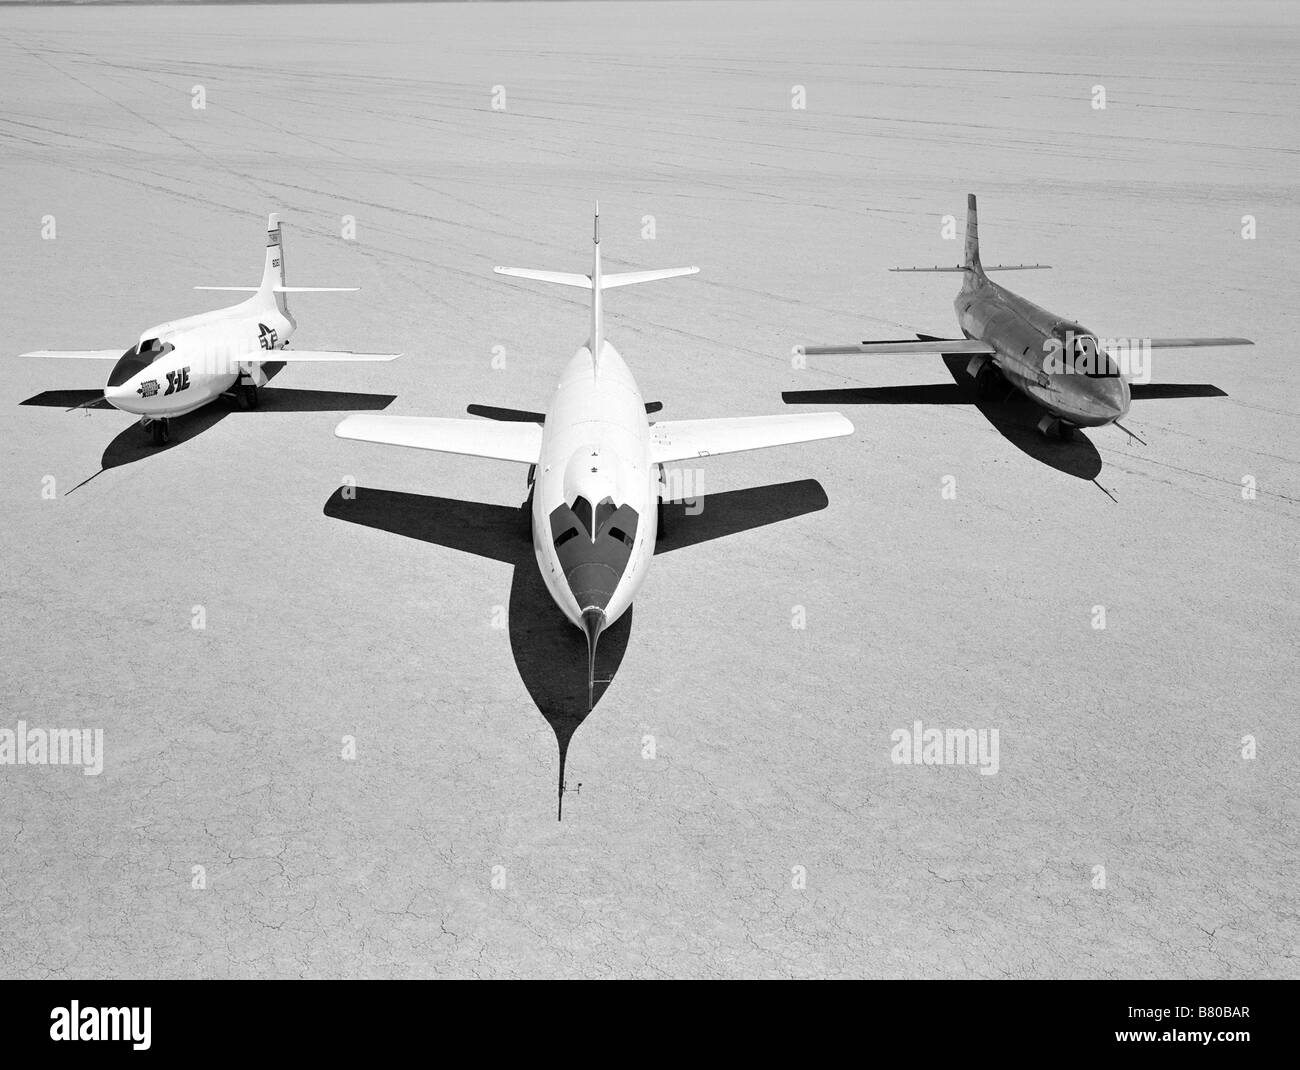 Inizio NACA aerei di ricerca sull'lakebed ad alta velocità della stazione di ricerca nel 1955: da sinistra a destra: X-1E, D-558-II, X-1B Foto Stock